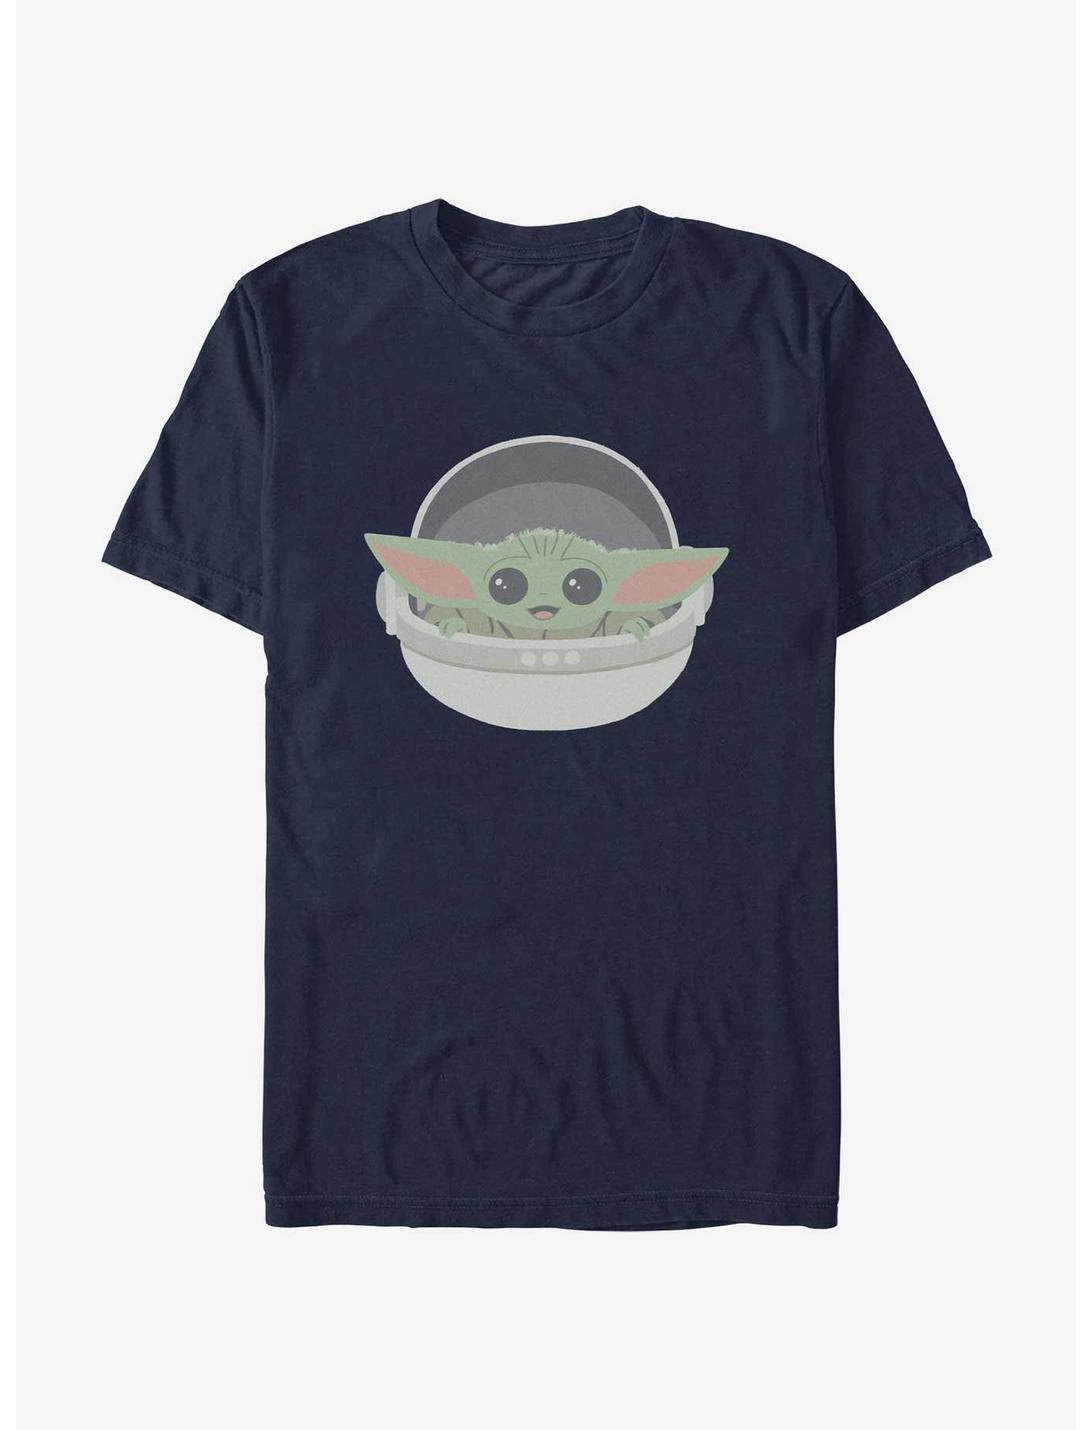 Star Wars The Mandalorian Grogu Cute T-Shirt, NAVY, hi-res